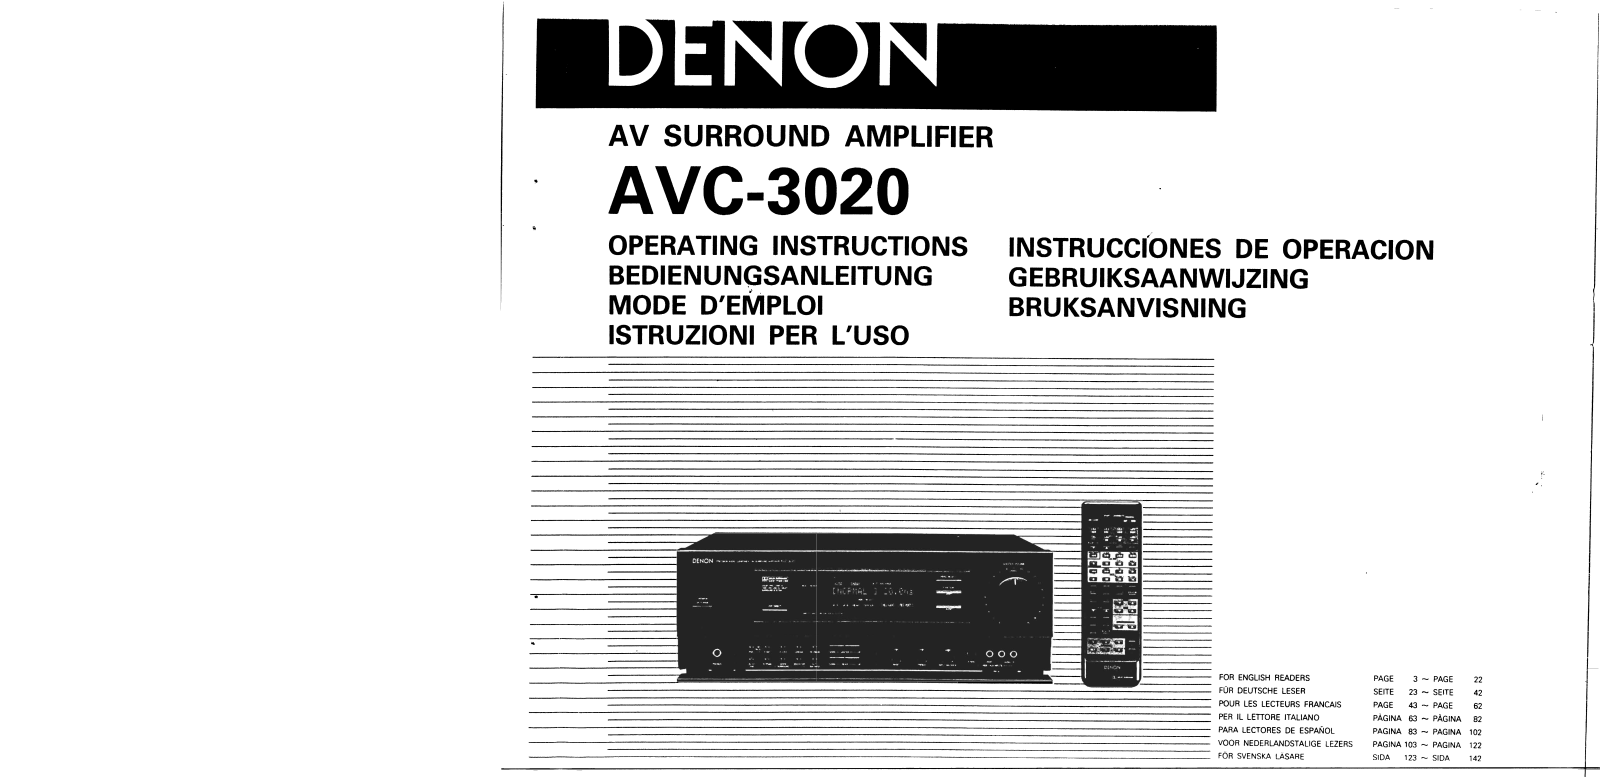 Denon AVC-3020 Owner's Manual